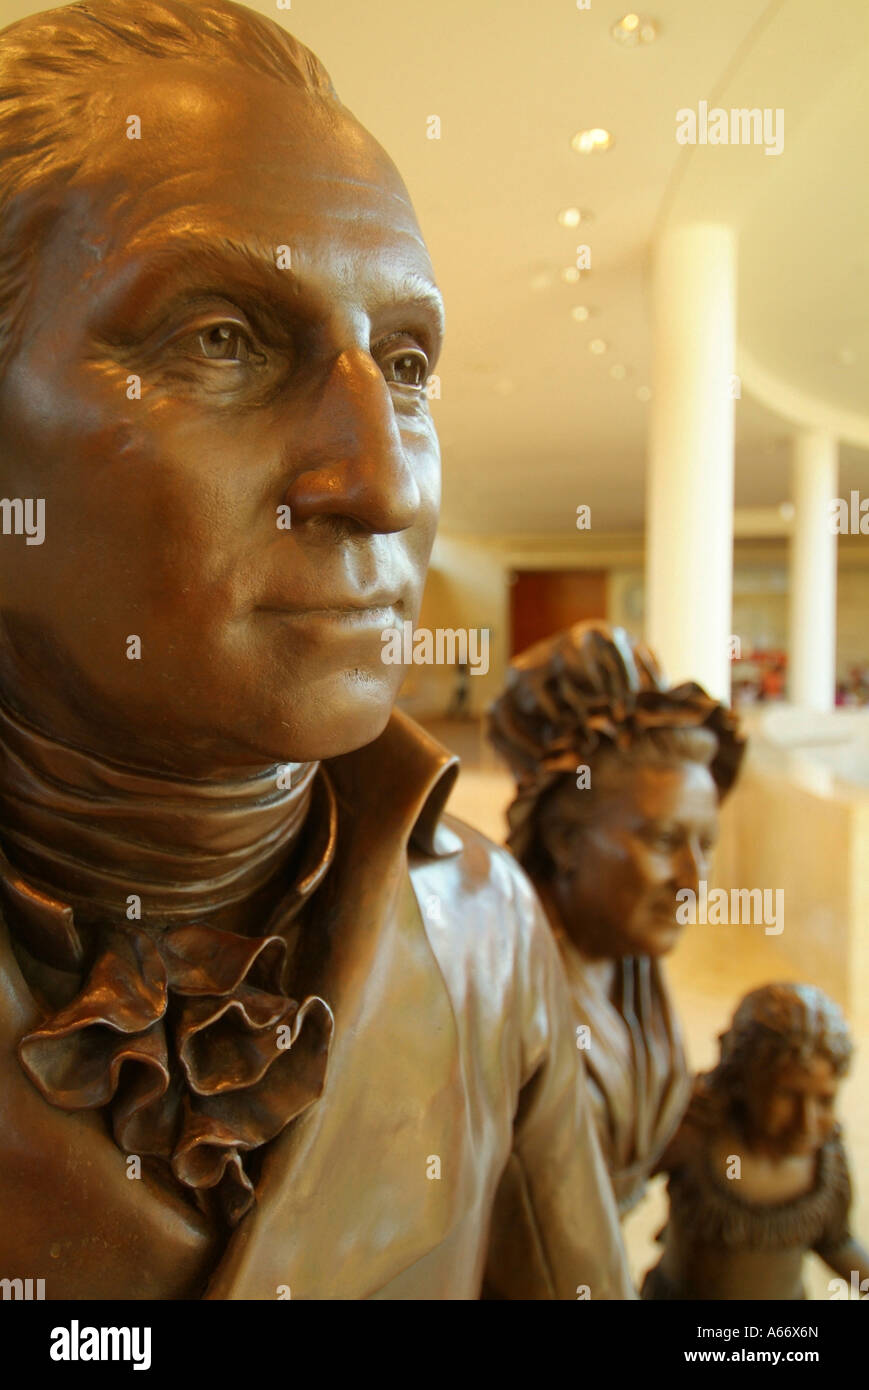 Des statues en bronze de George Washington et sa famille à Mount Vernon, en Virginie Banque D'Images